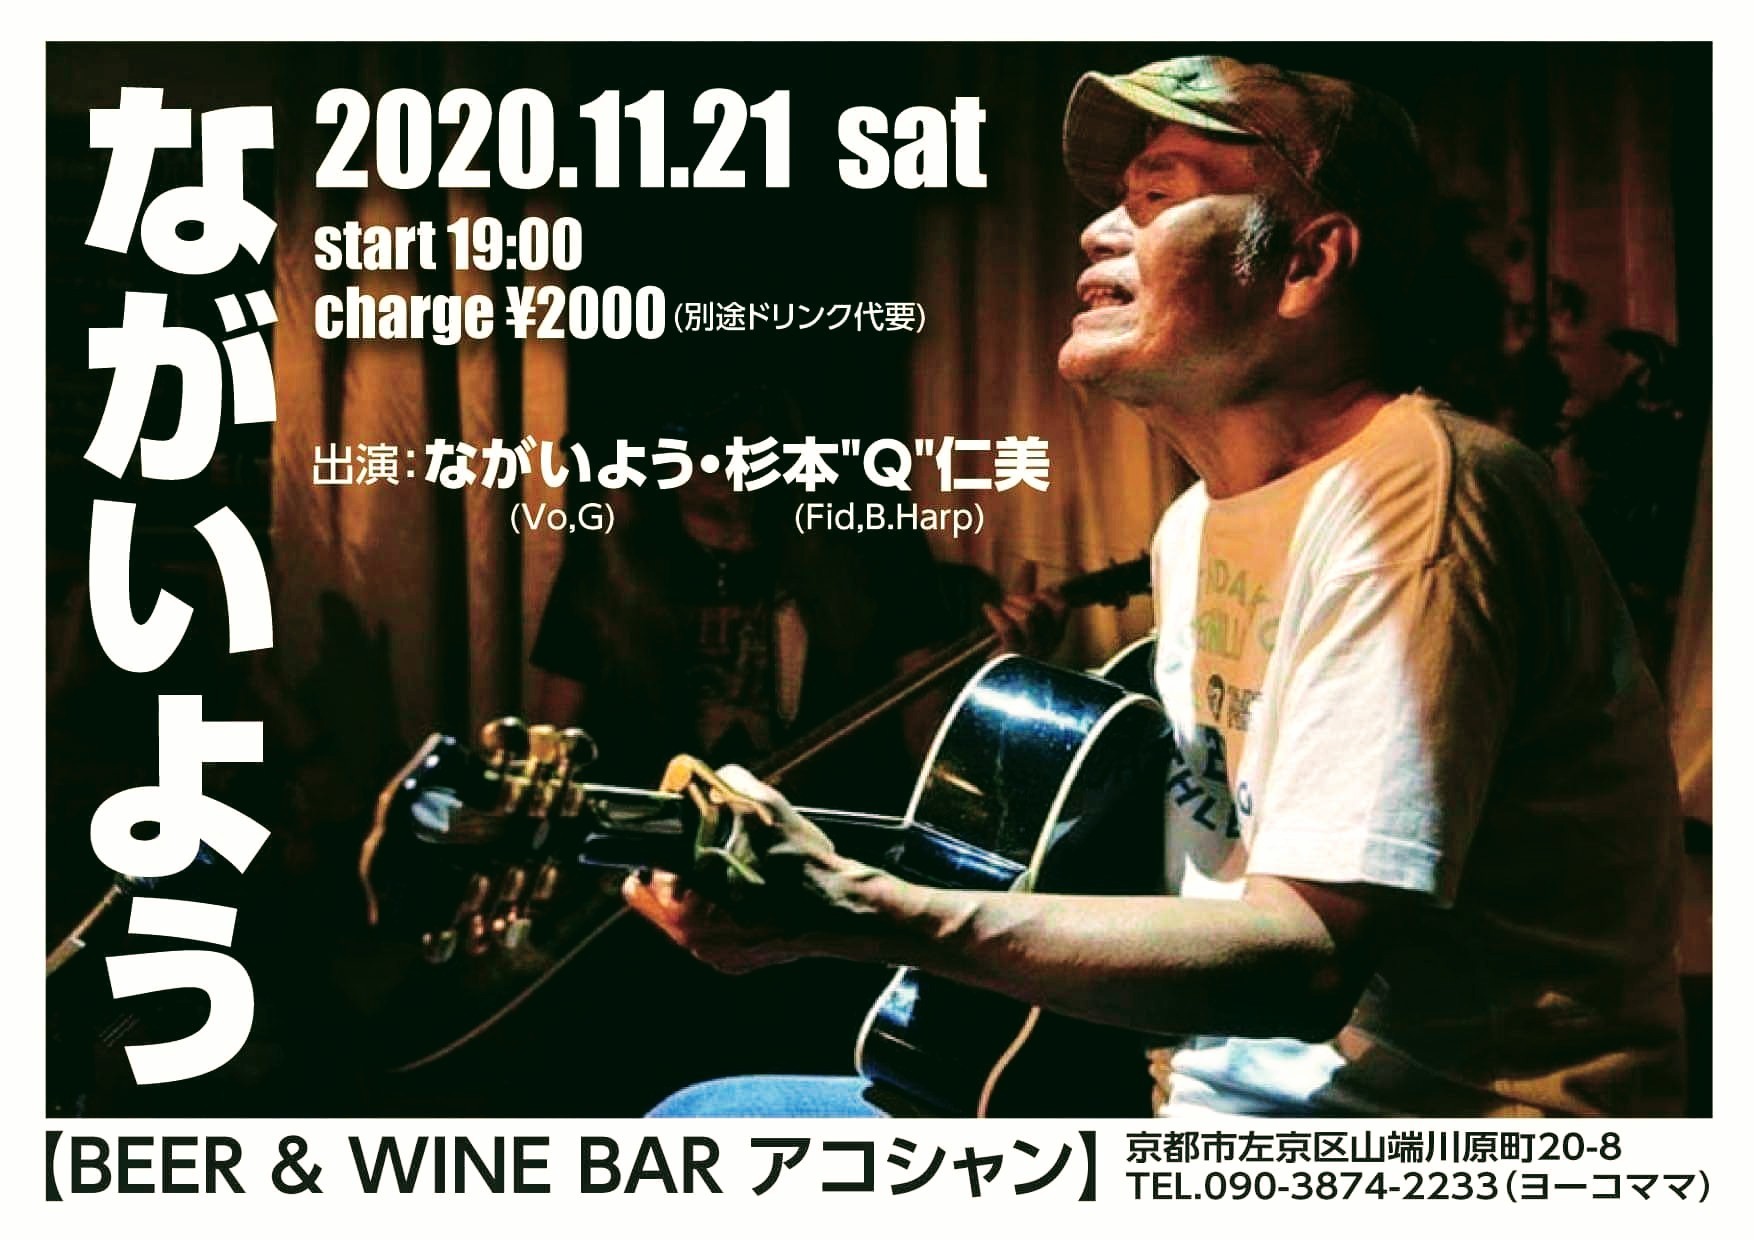 11月21日(土) BEER & WINE Bar アコシャン_c0162137_16504229.jpeg